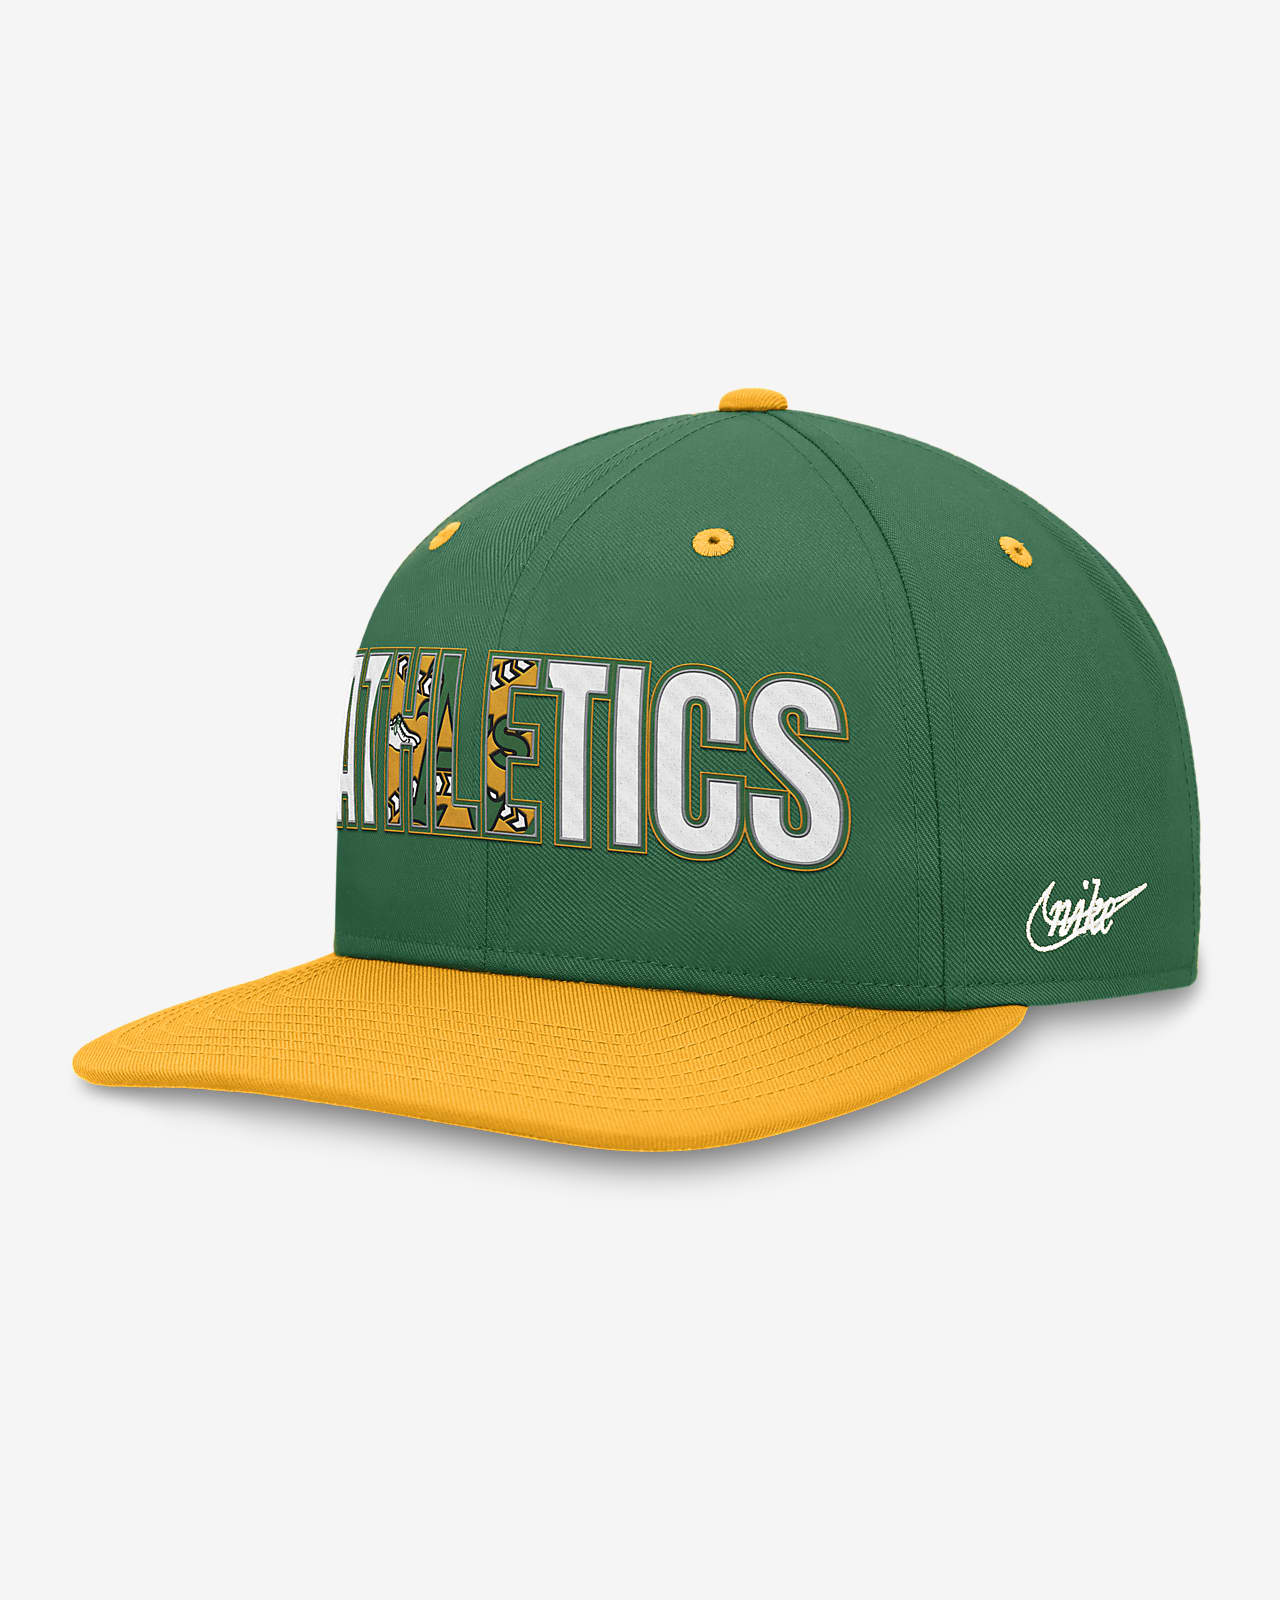 Oakland Athletics Pro Cooperstown Men's Nike MLB Adjustable Hat